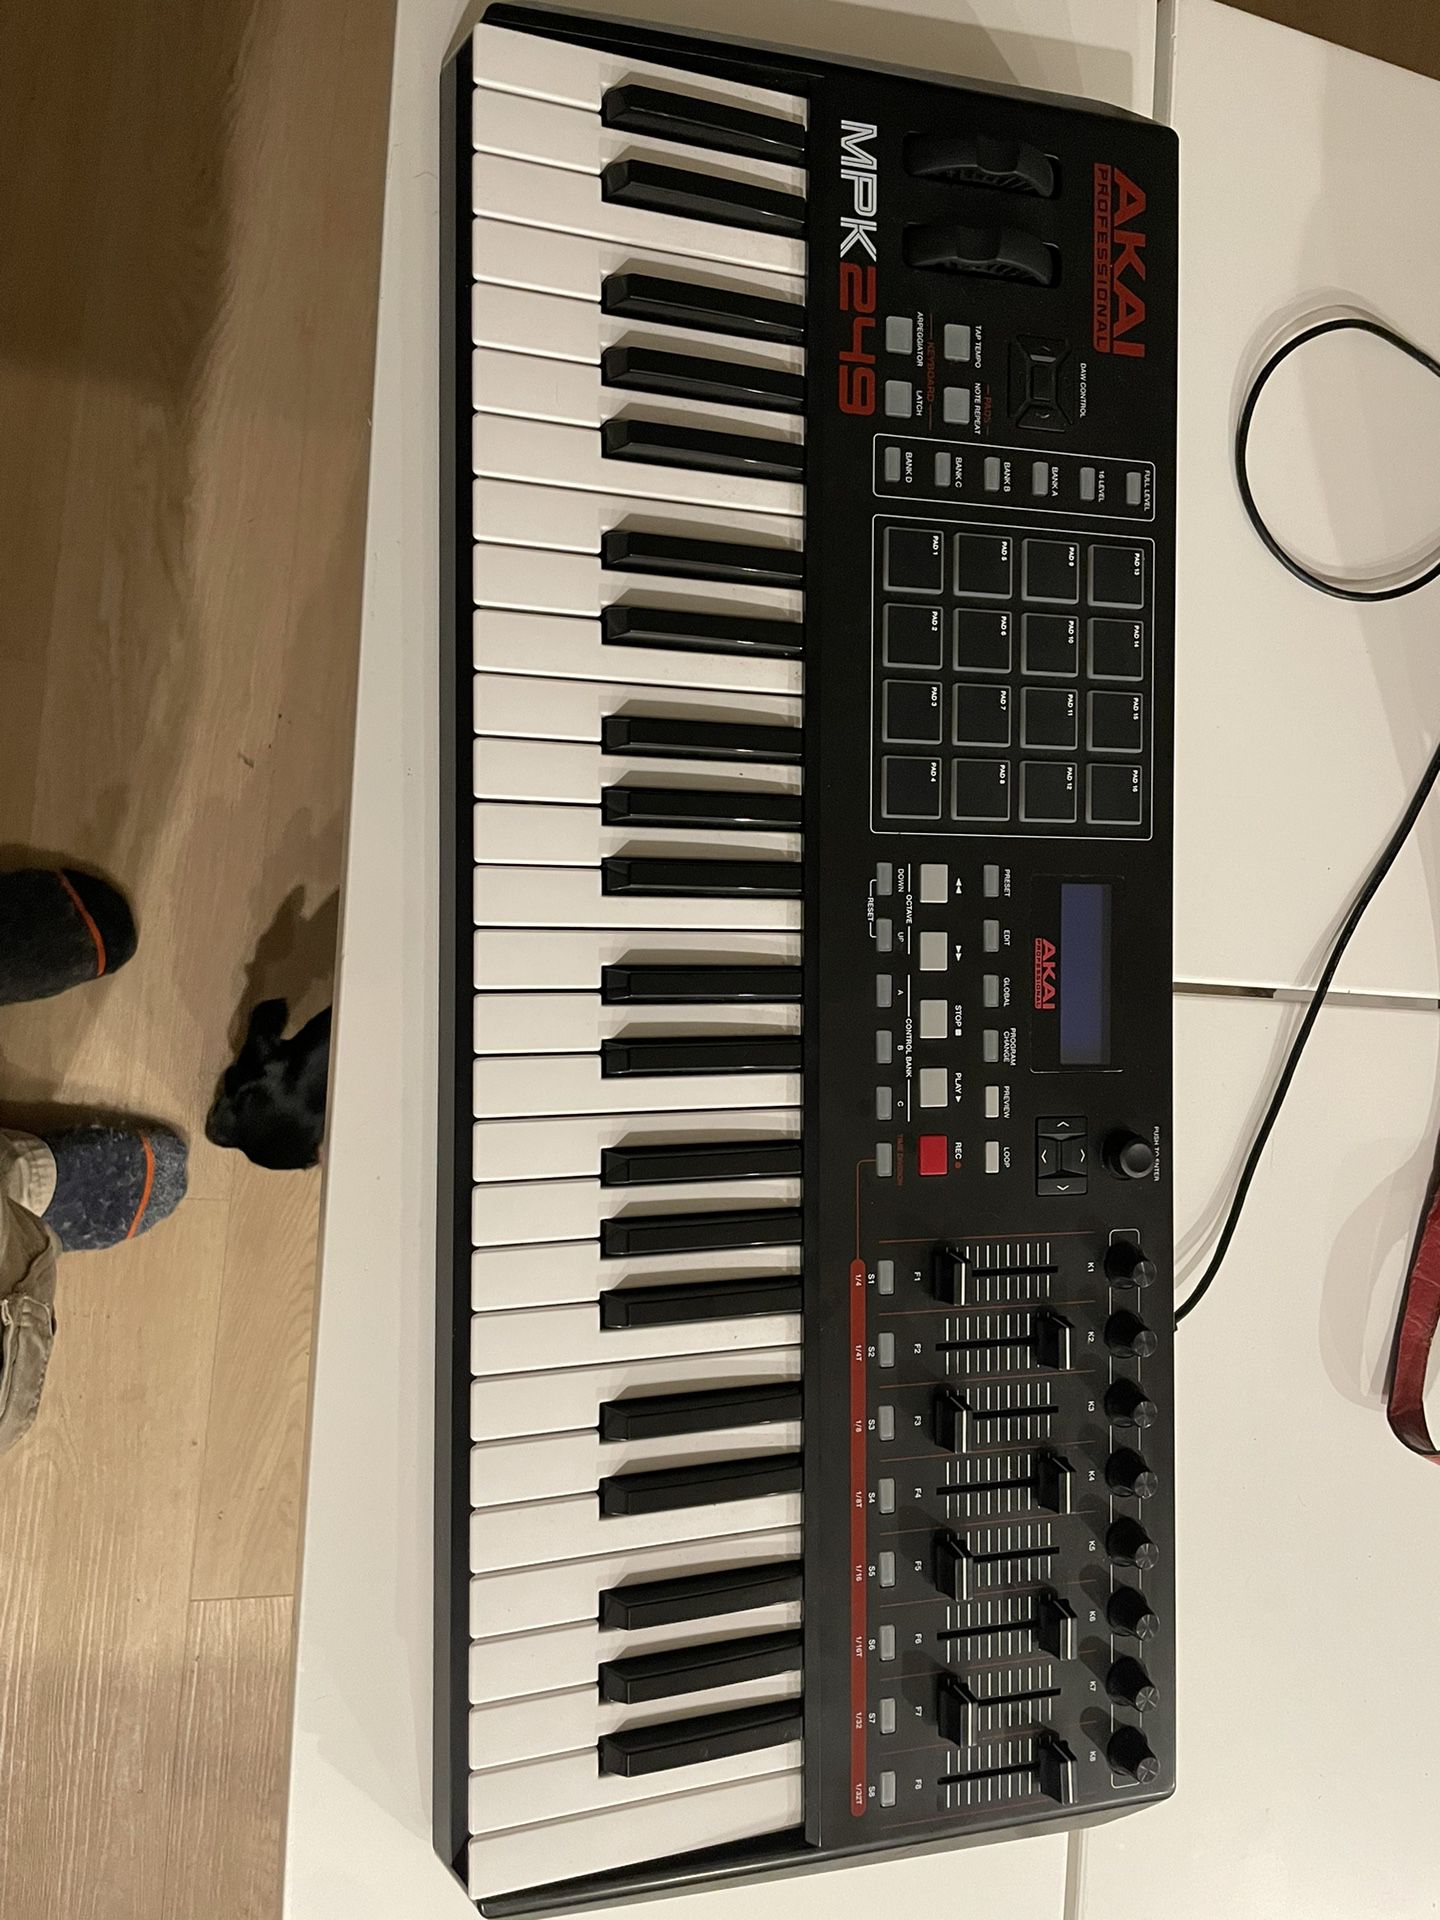 Akai MPK249 Keyboard